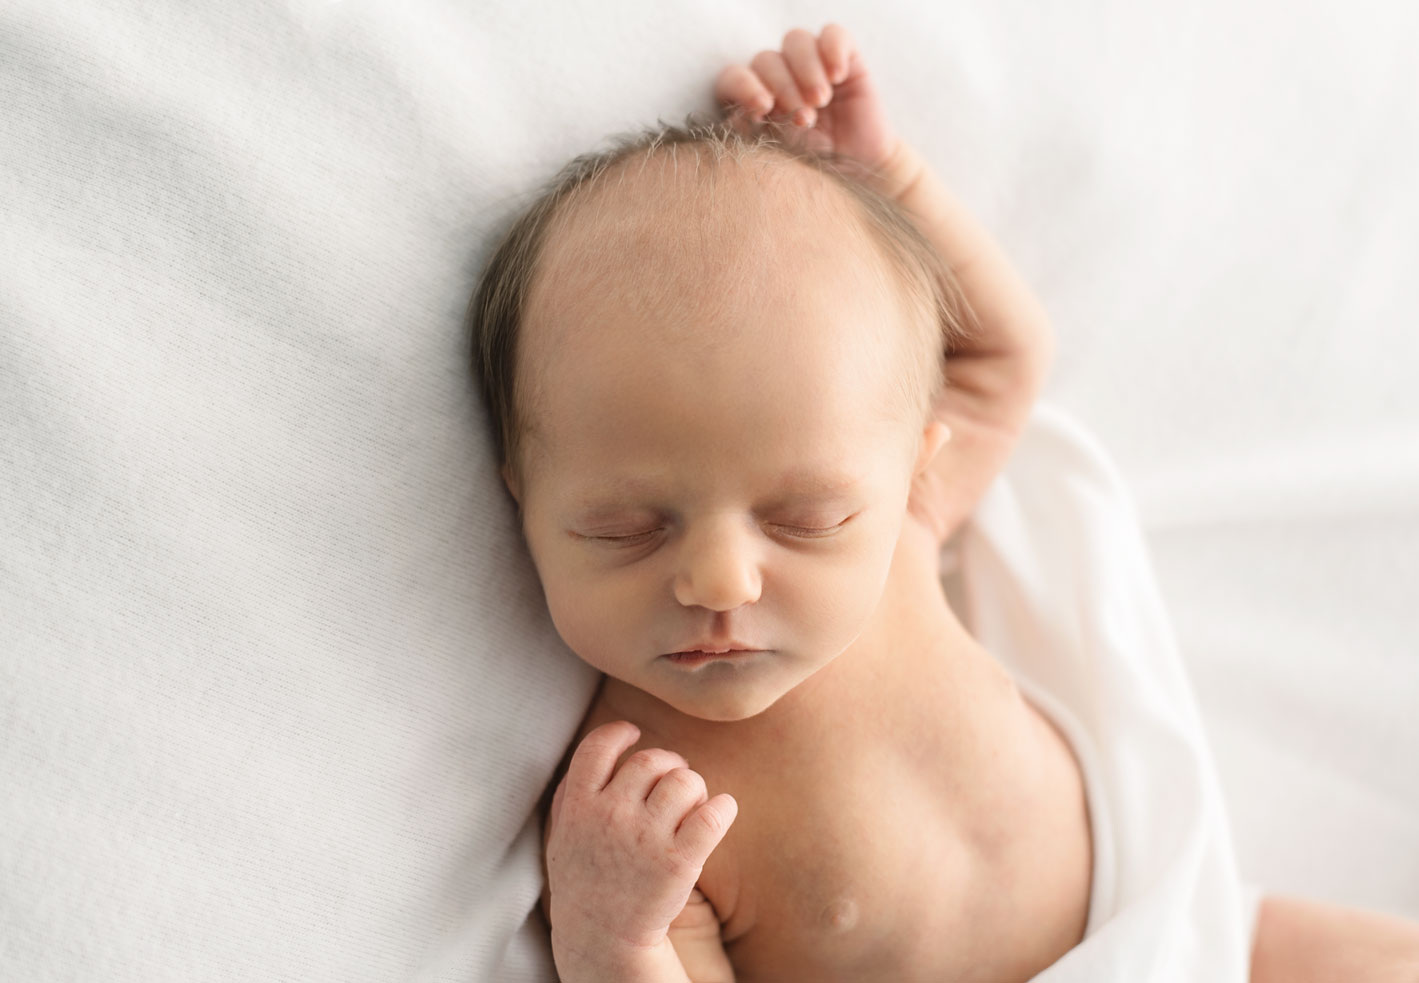 Newborn baby natural pose